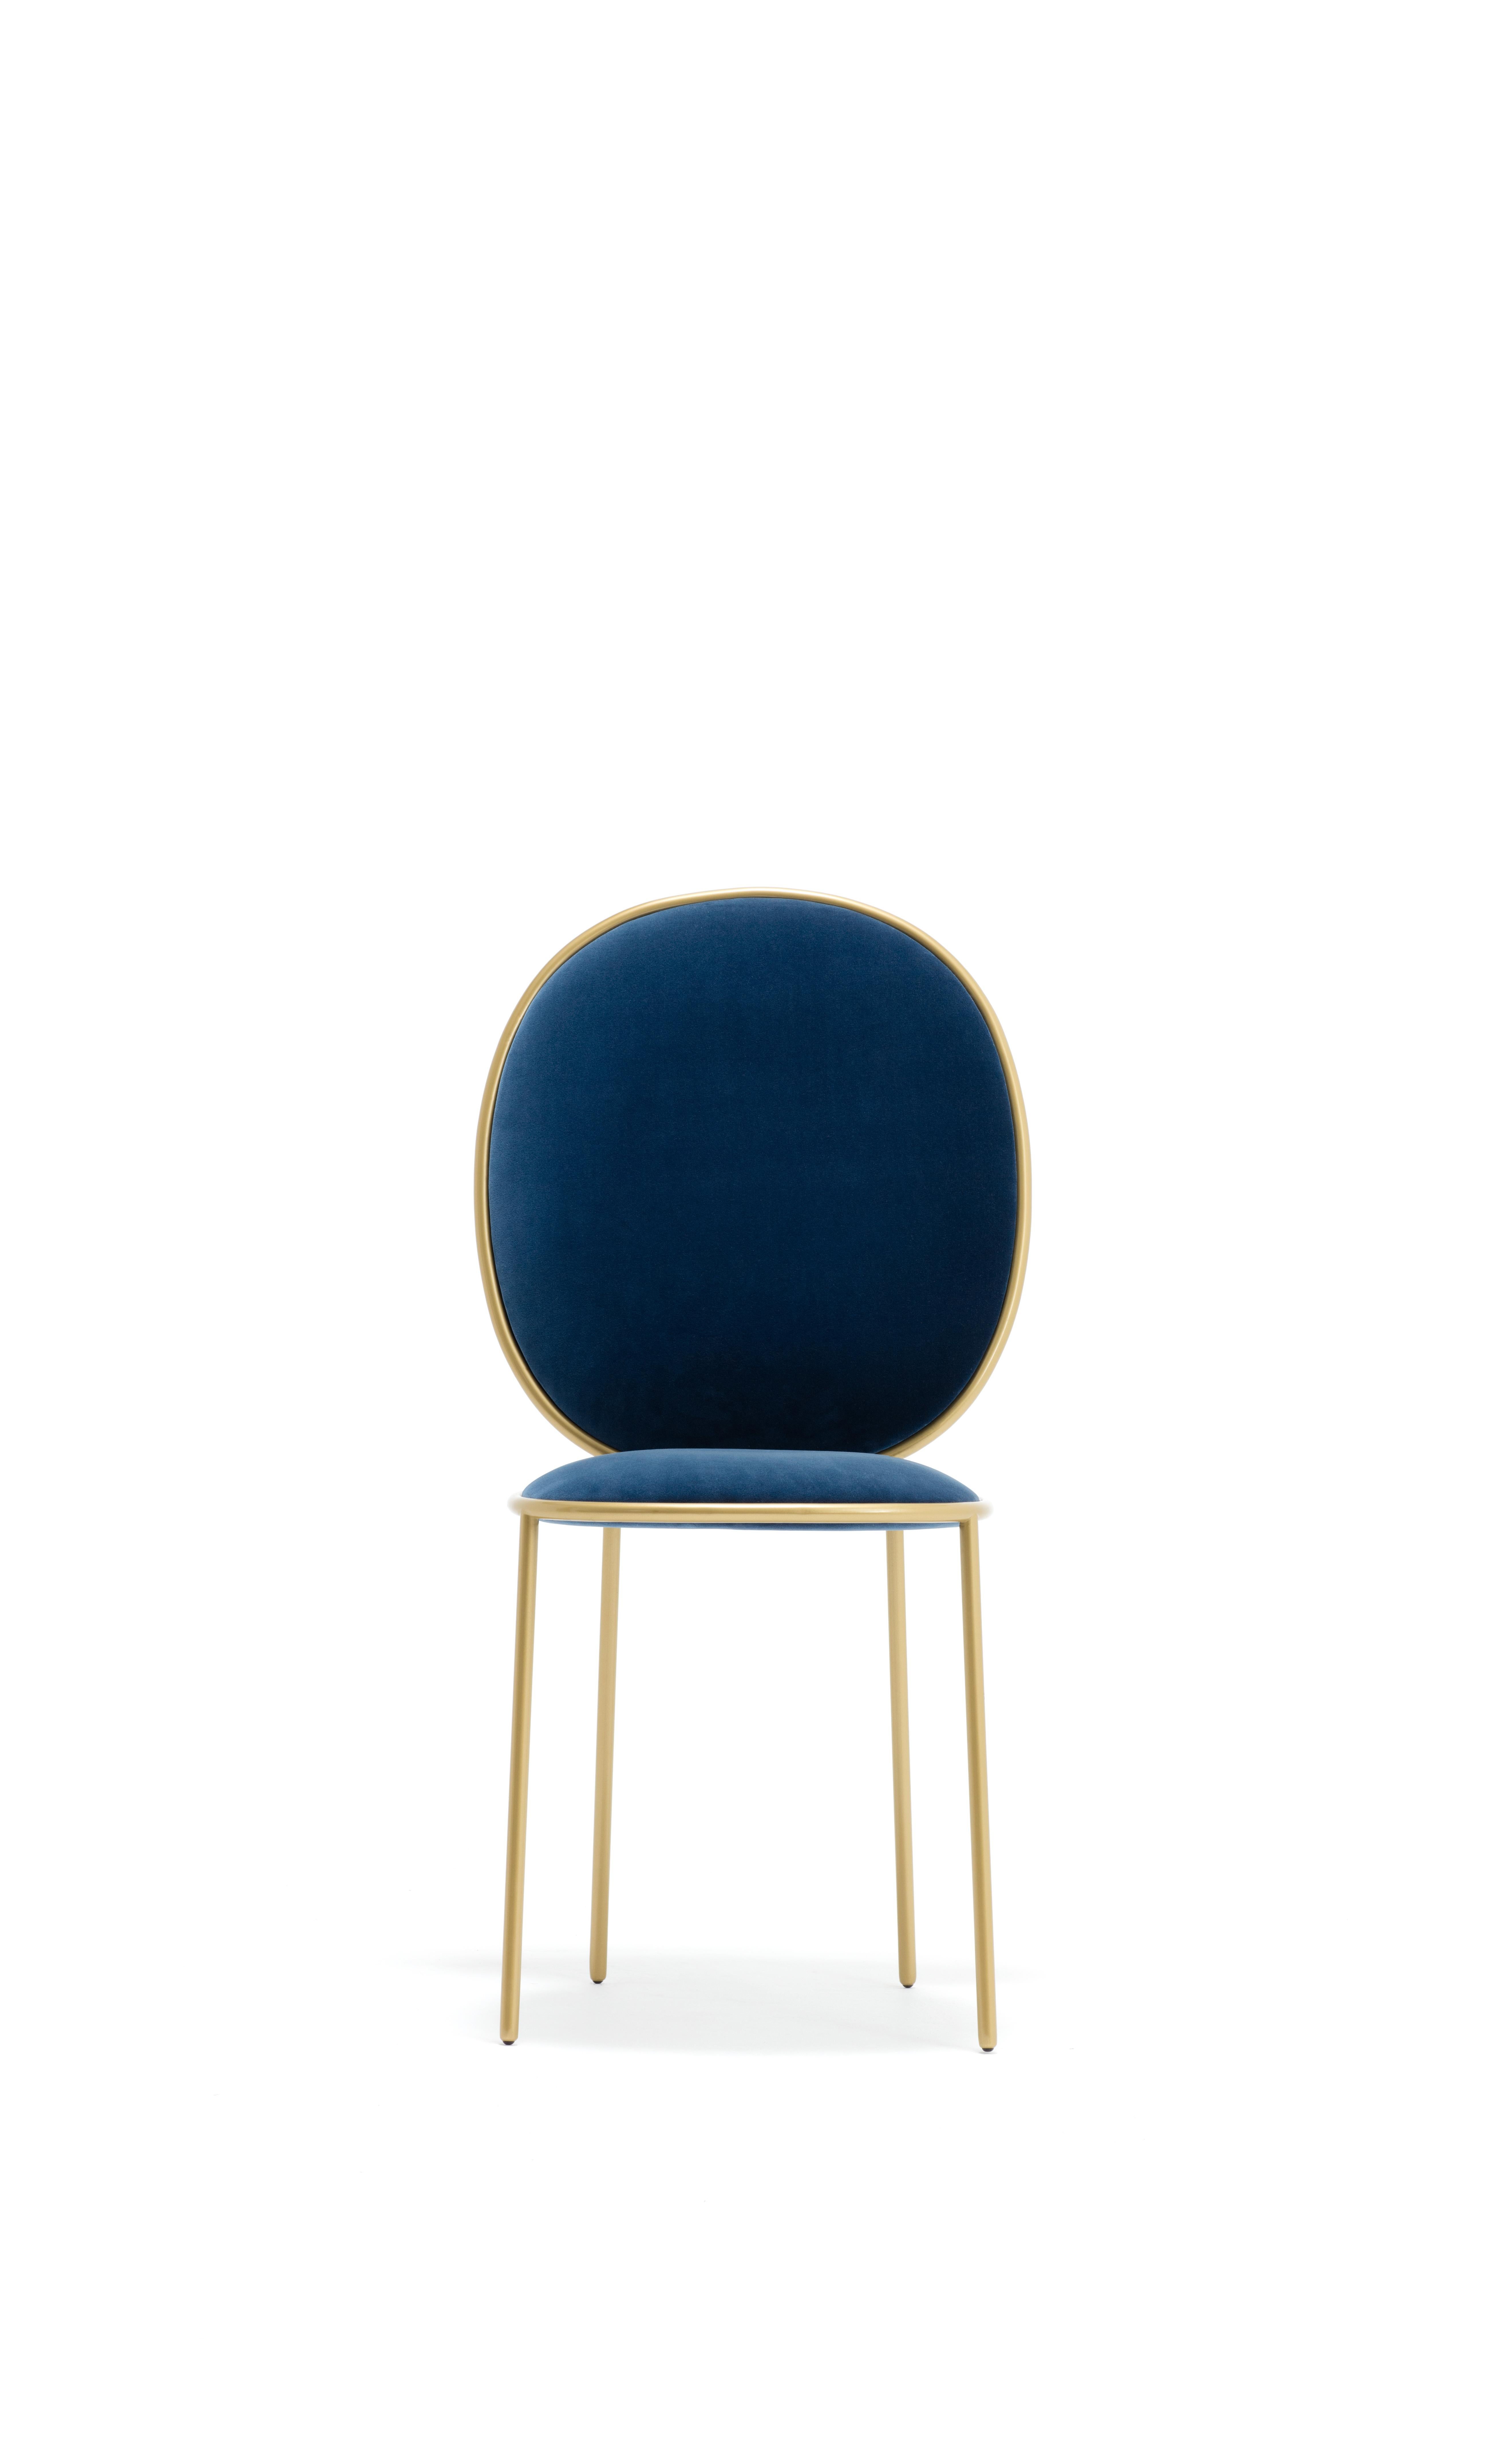 Chaise de salle à manger contemporaine tapissée de velours bleu indigo - séjour par Nika Zupanc

La famille Stay transforme les repas de tous les jours en une occasion spéciale. La Chaise Dining et le Fauteuil Dining sont des variations sur un thème